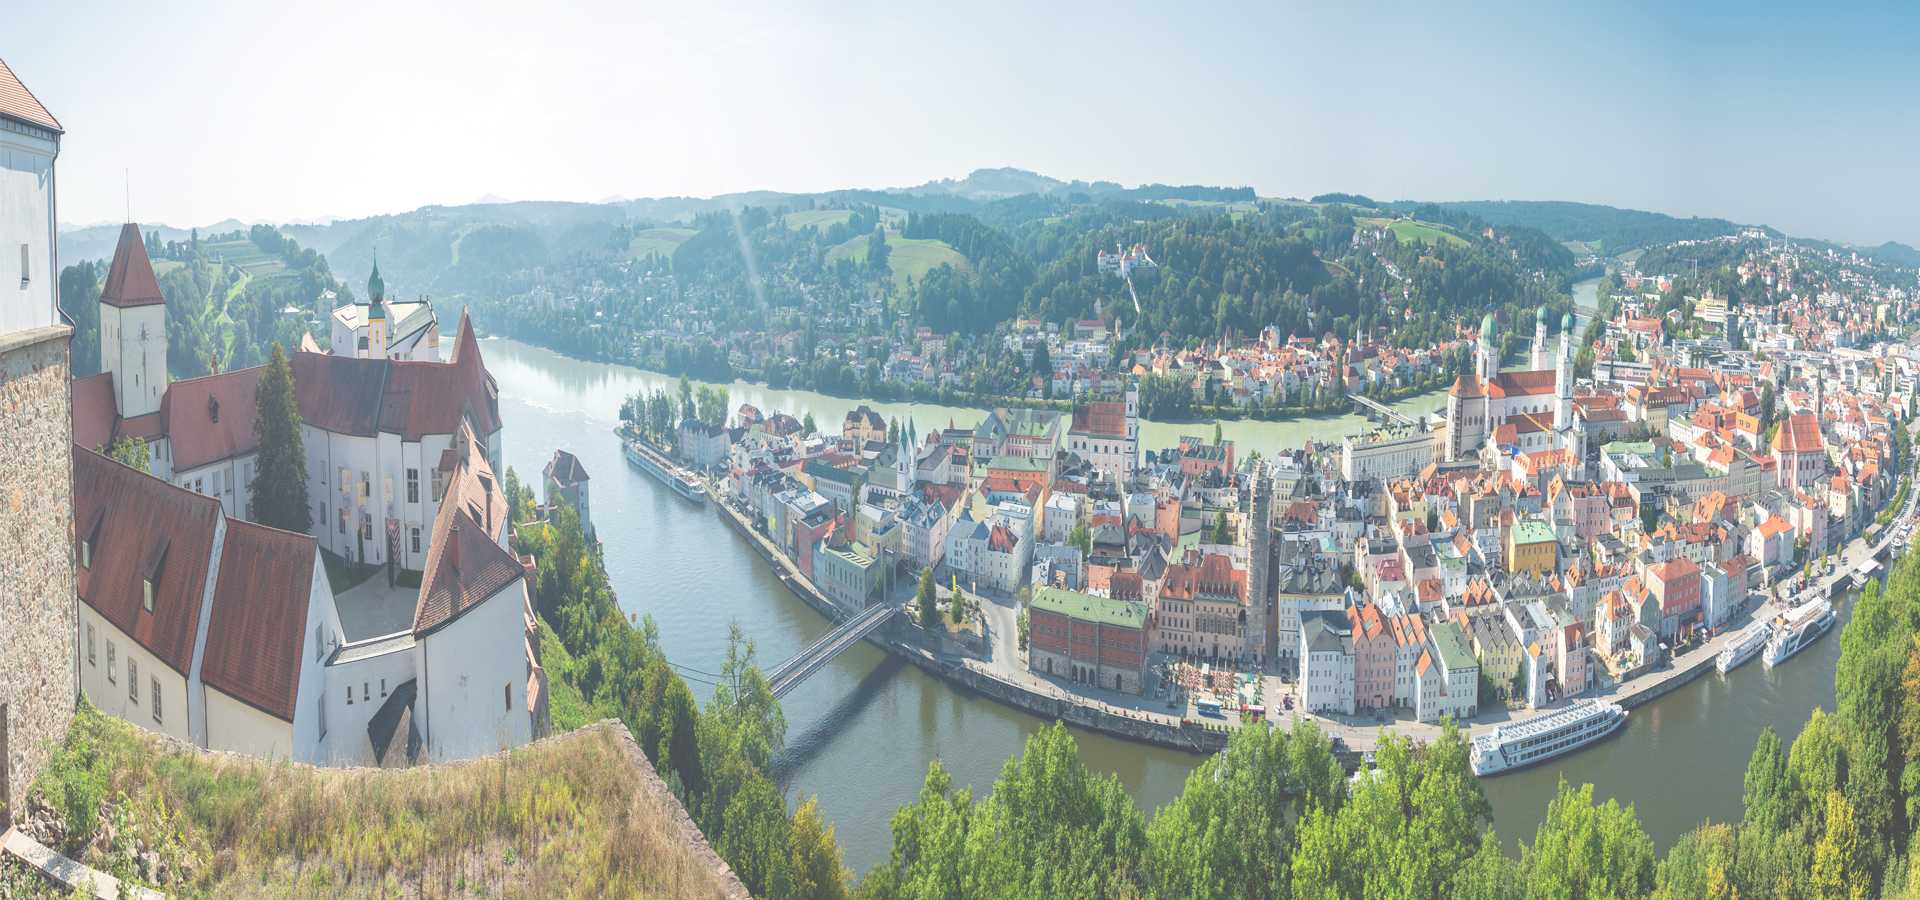 <b>Passau, Lower Bavaria, Bavaria, Germany</b>